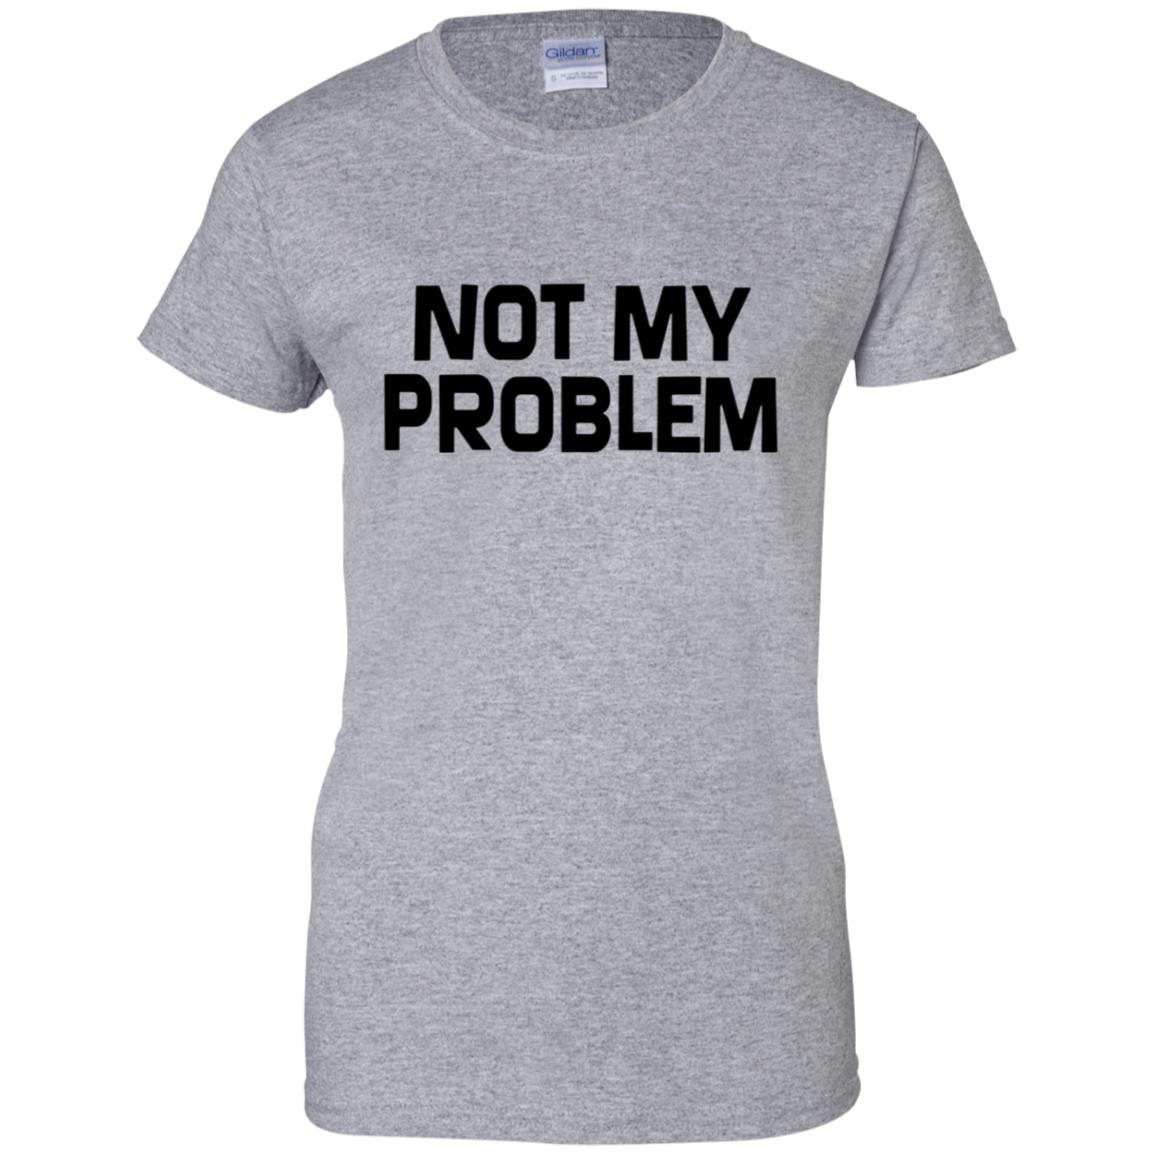 Not My Problem T Shirt - 10% Off - FavorMerch